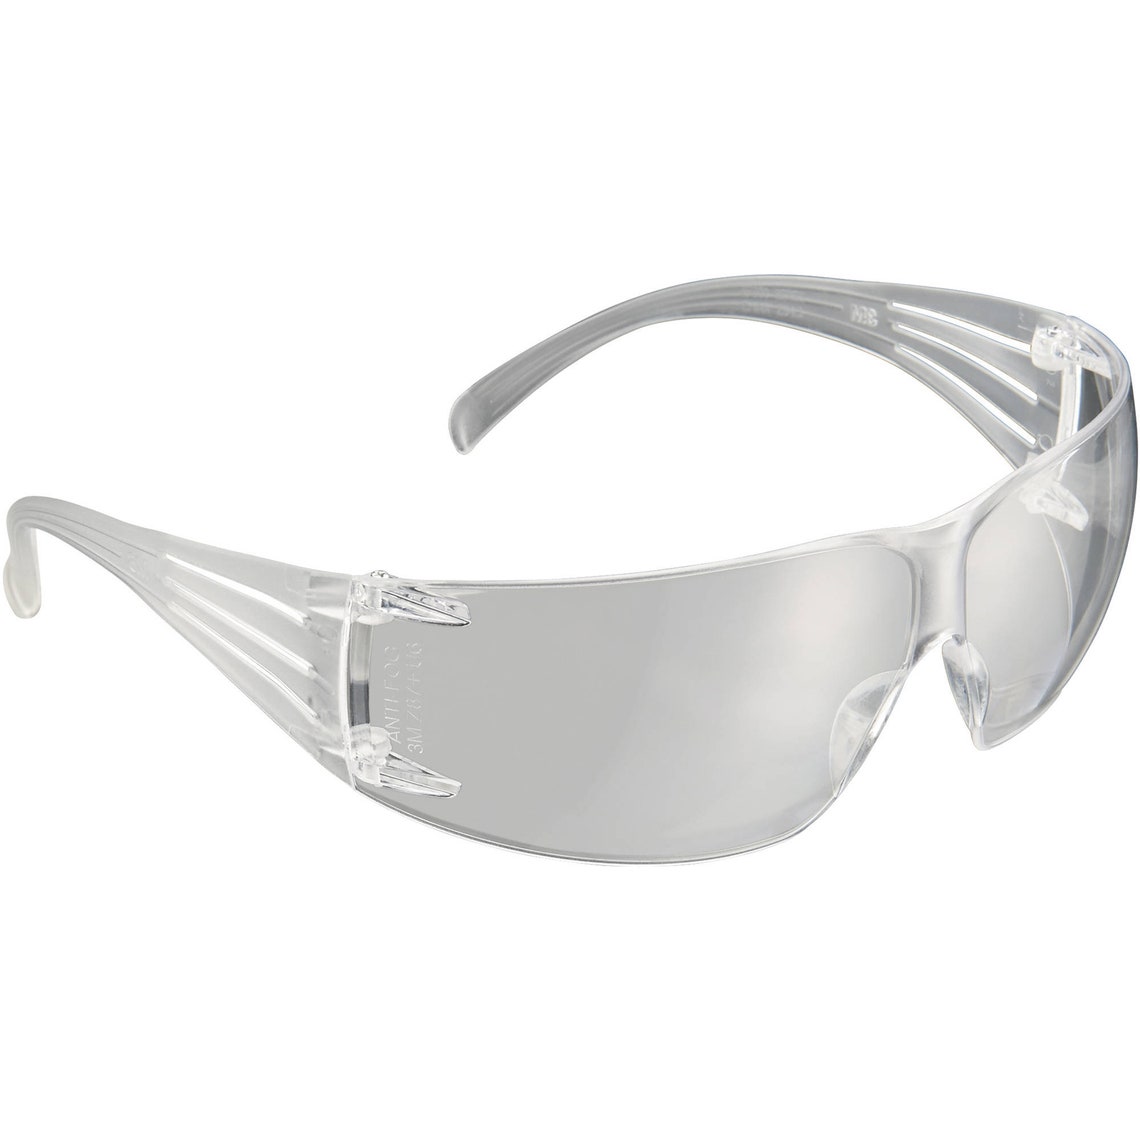 3m Securefit 200 Safety Eyewear Clear Anti Fog Lens Etsy